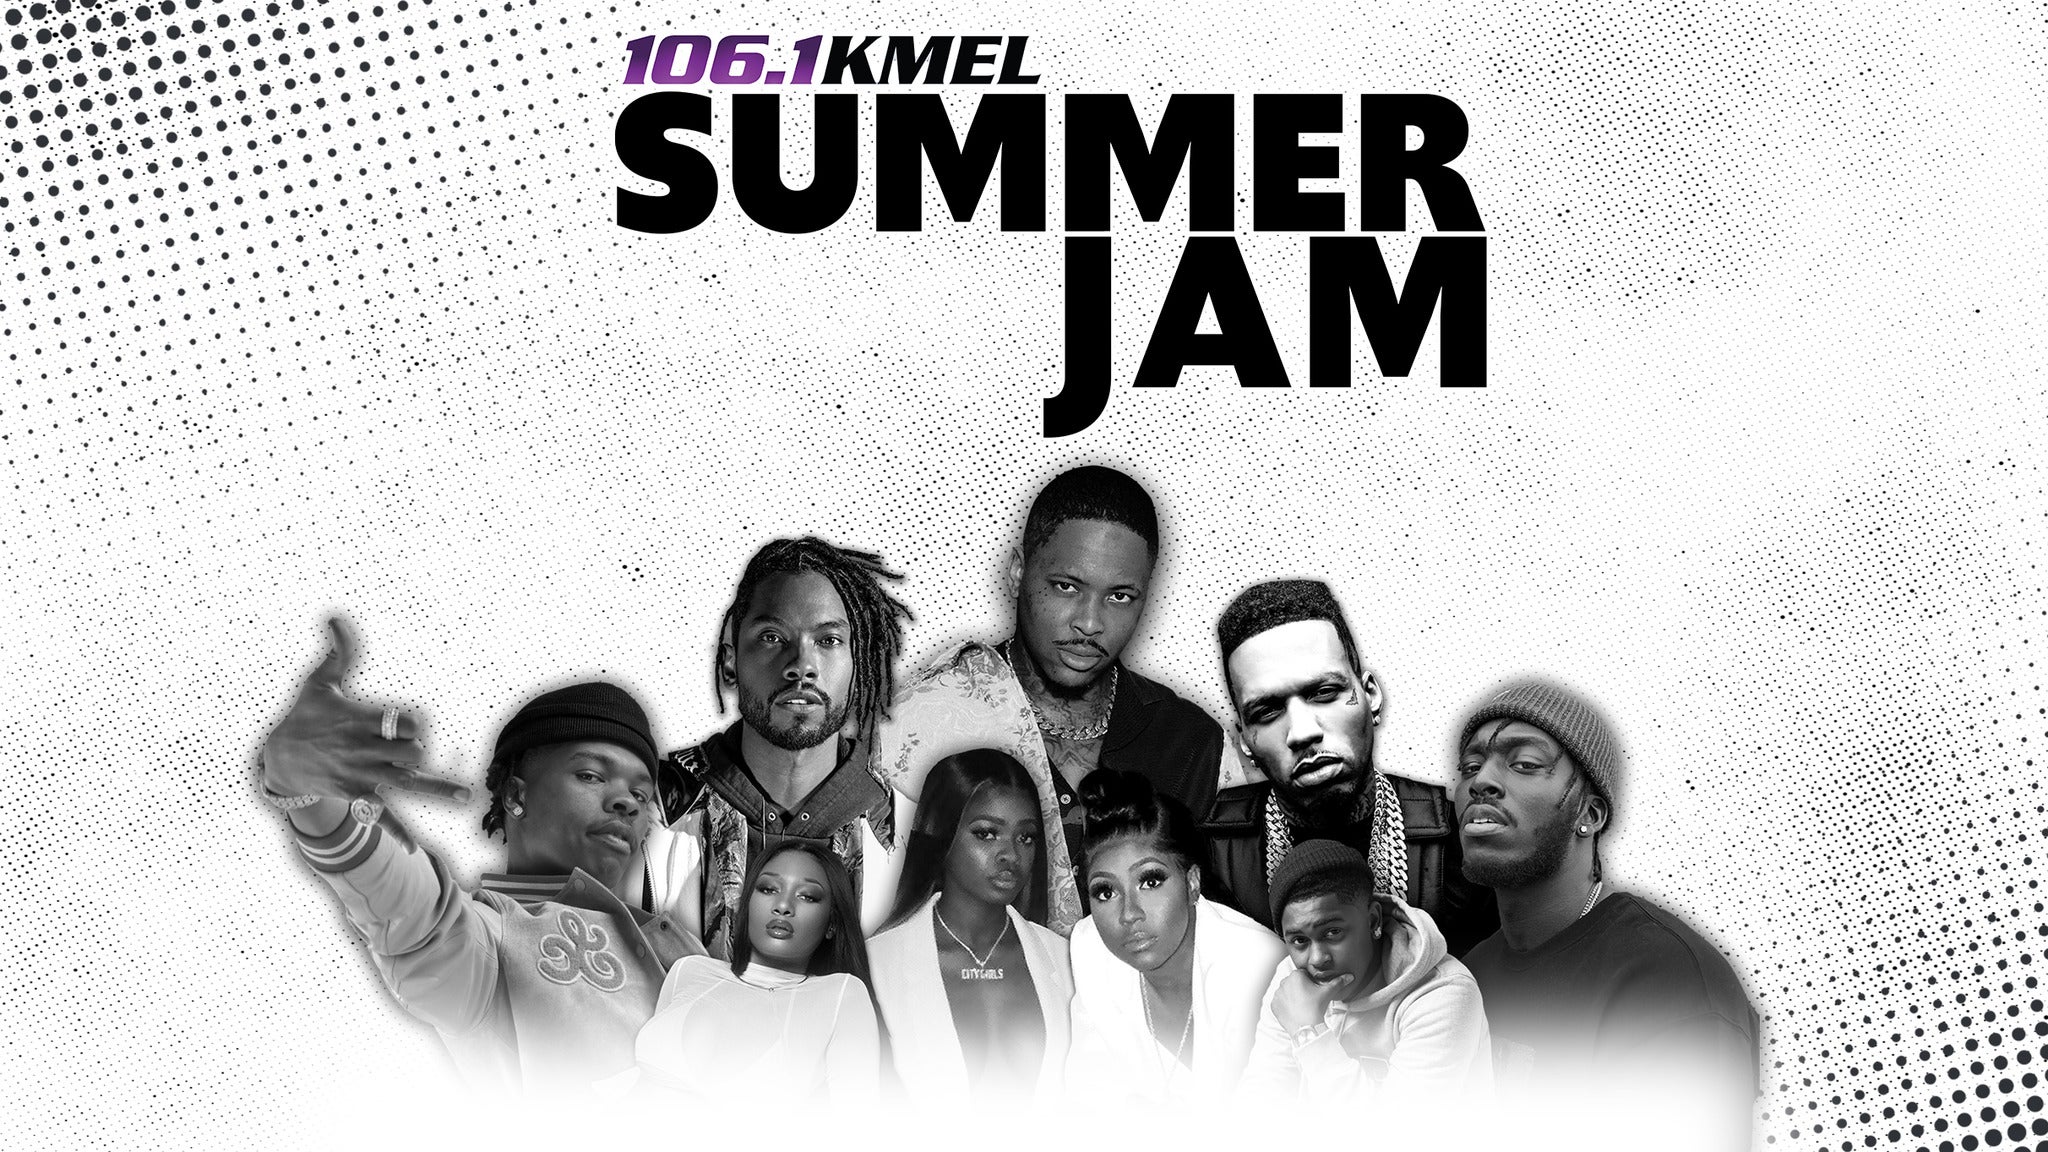 106.1 KMEL Summer Jam 2019 at Oakland Arena Oakland Alameda County